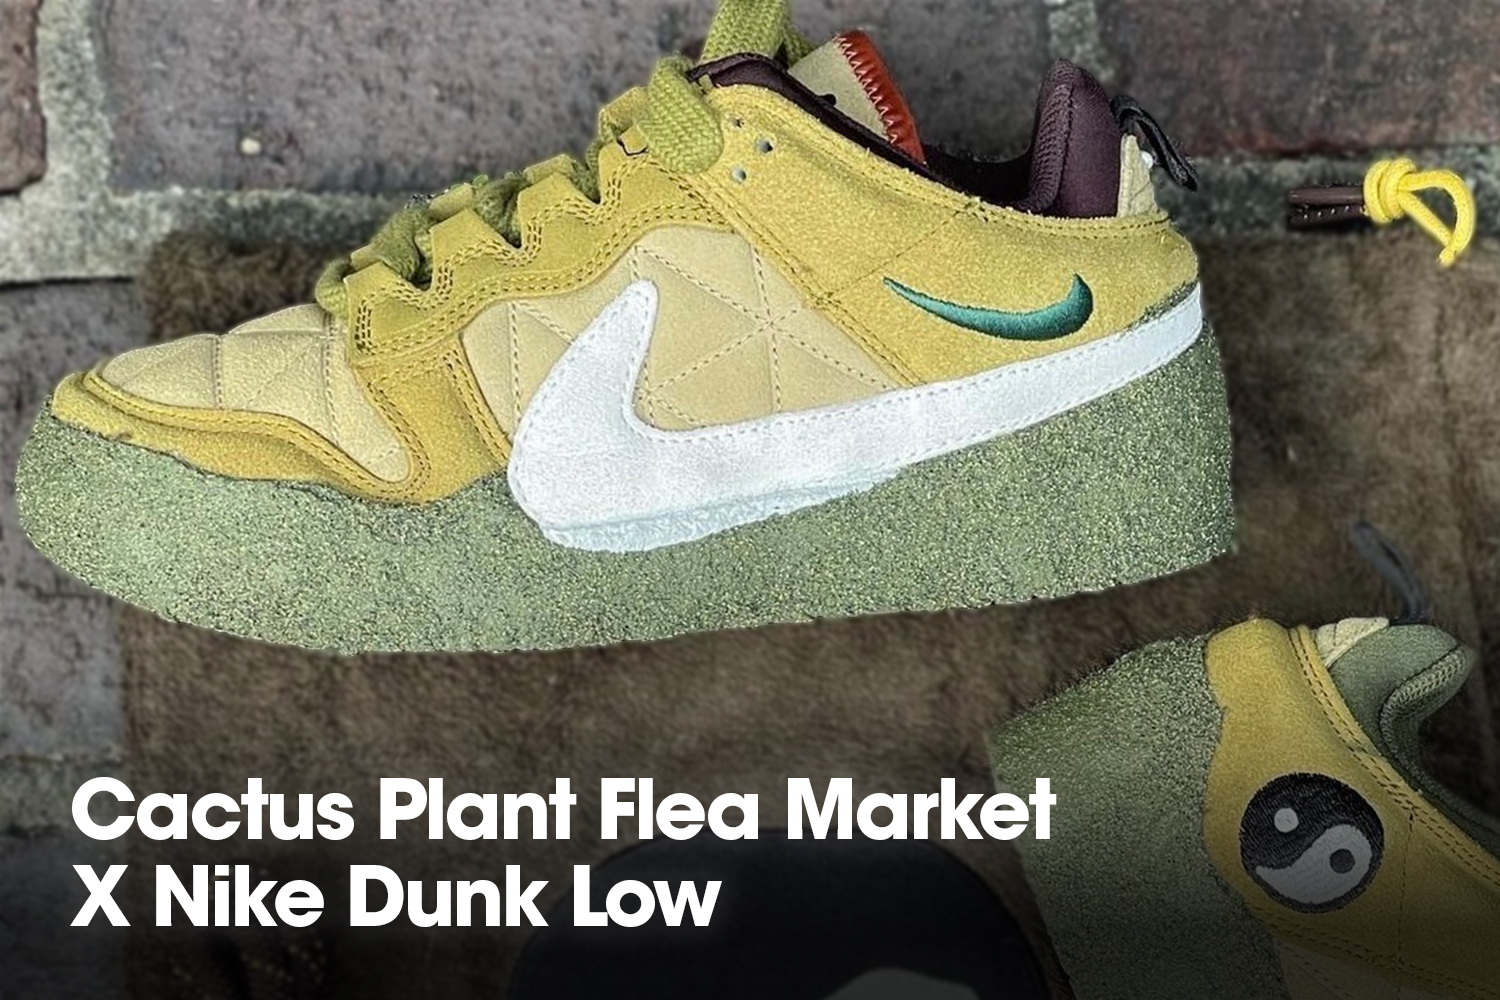 Cactus Plant Flea Market x Nike Dunk Low release 2022